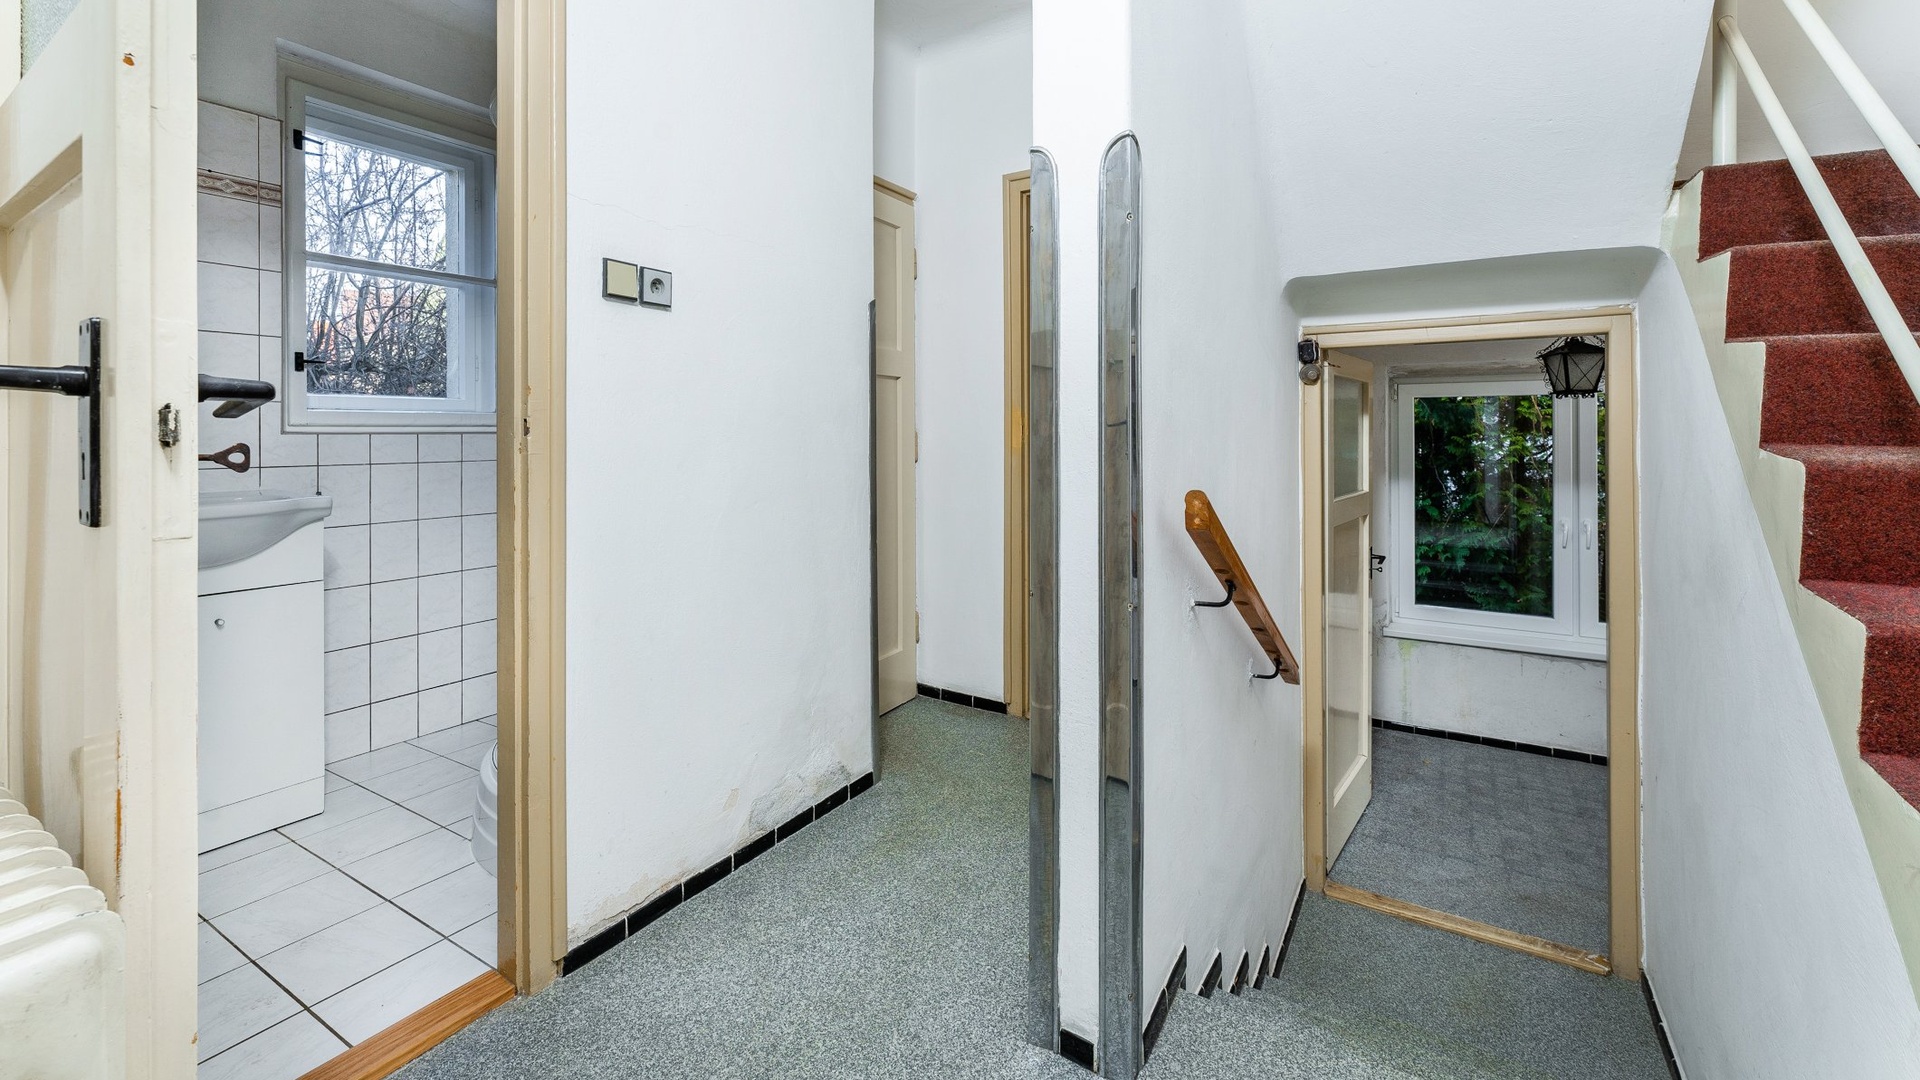 Prodej rodinného domu 5+1, 152 m2, Praha Suchdol